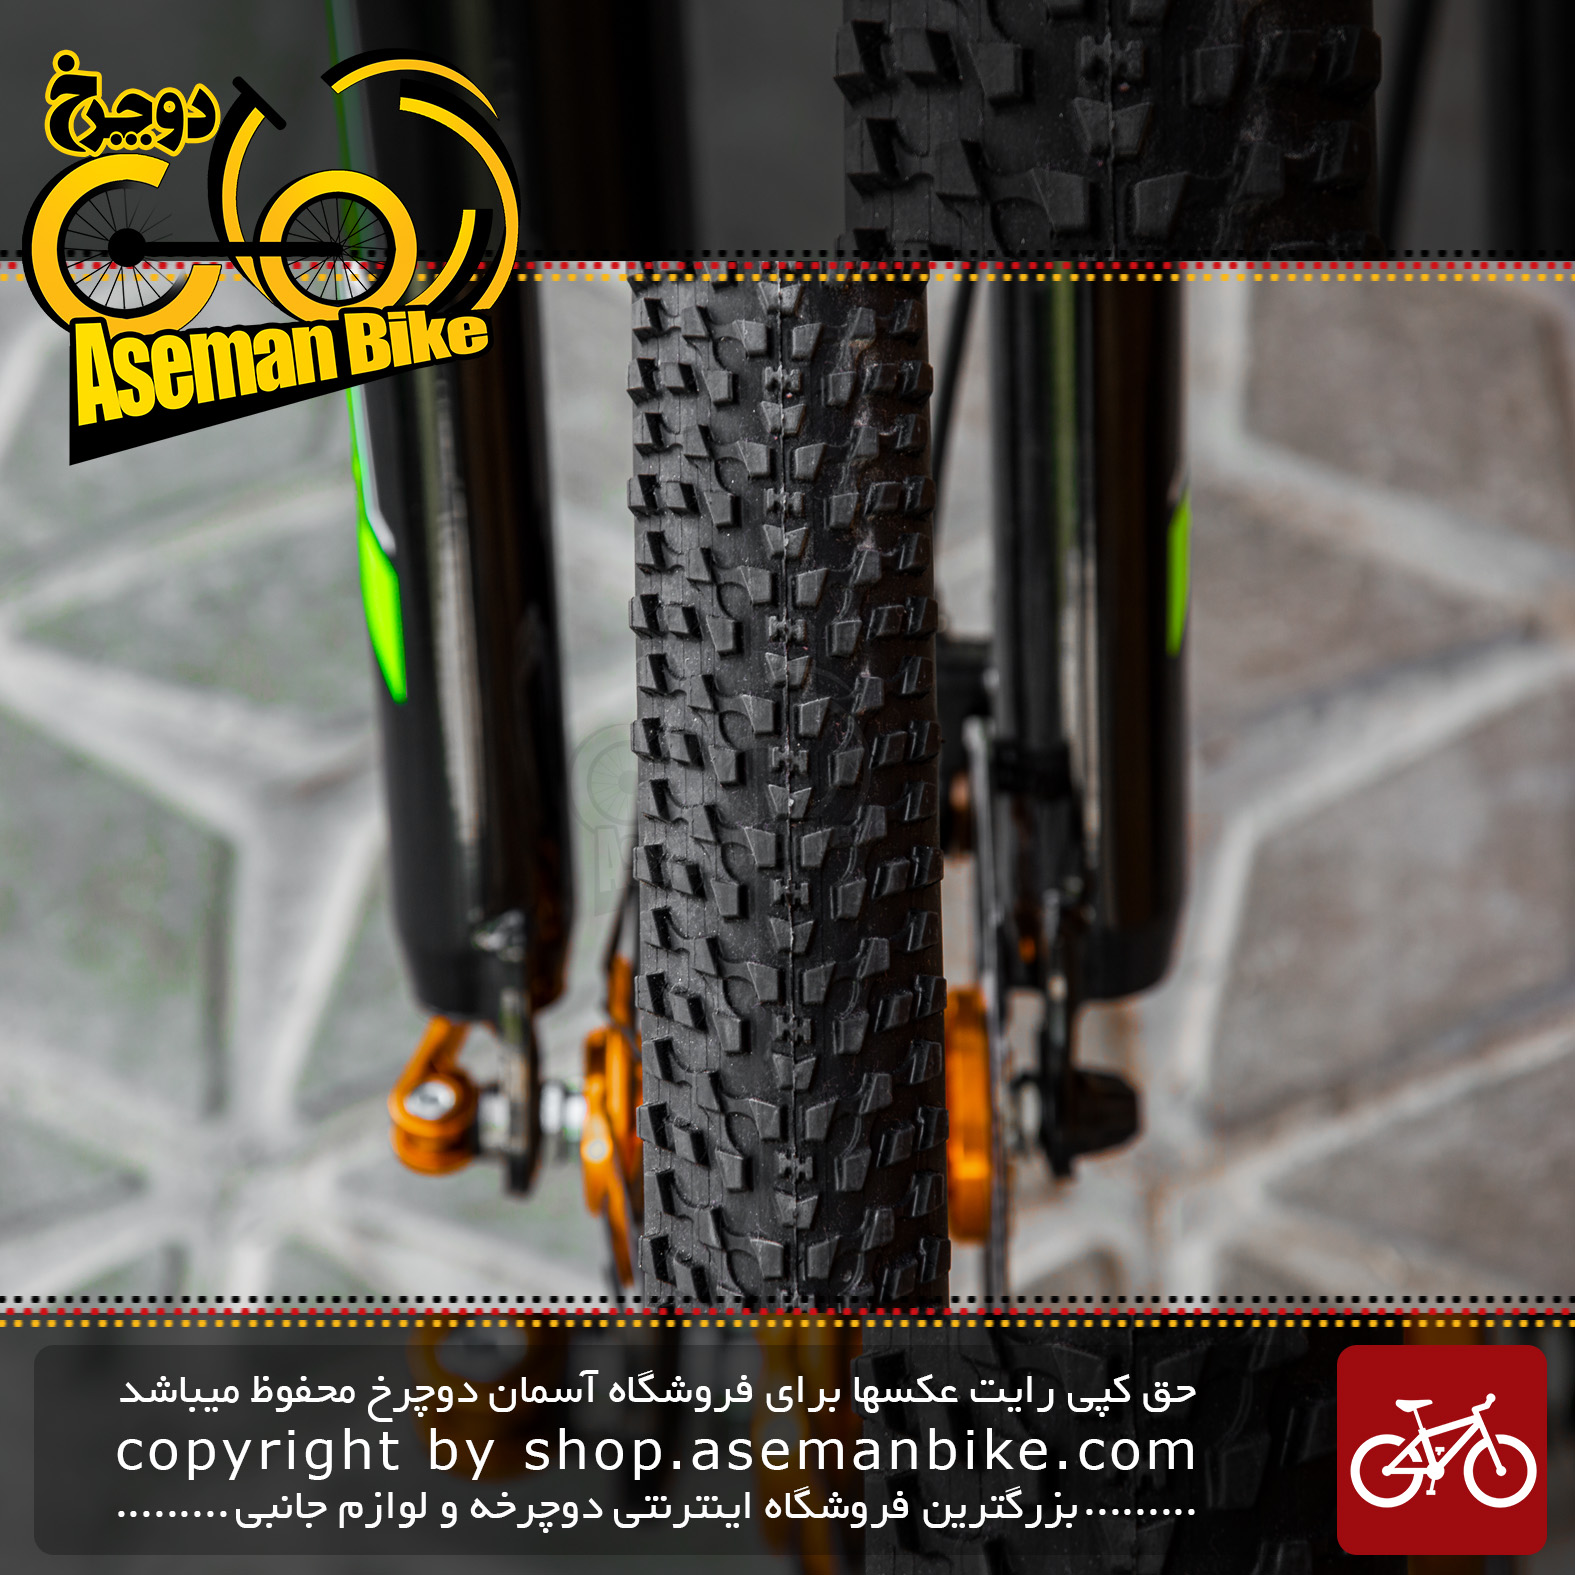 دوچرخه کوهستان برند کراس سایز 27.5 رنگ سبز و مشکی با سیستم دنده 24 سرعته MTB Bicycle Cross Aspect Size 27.5 24 Speed